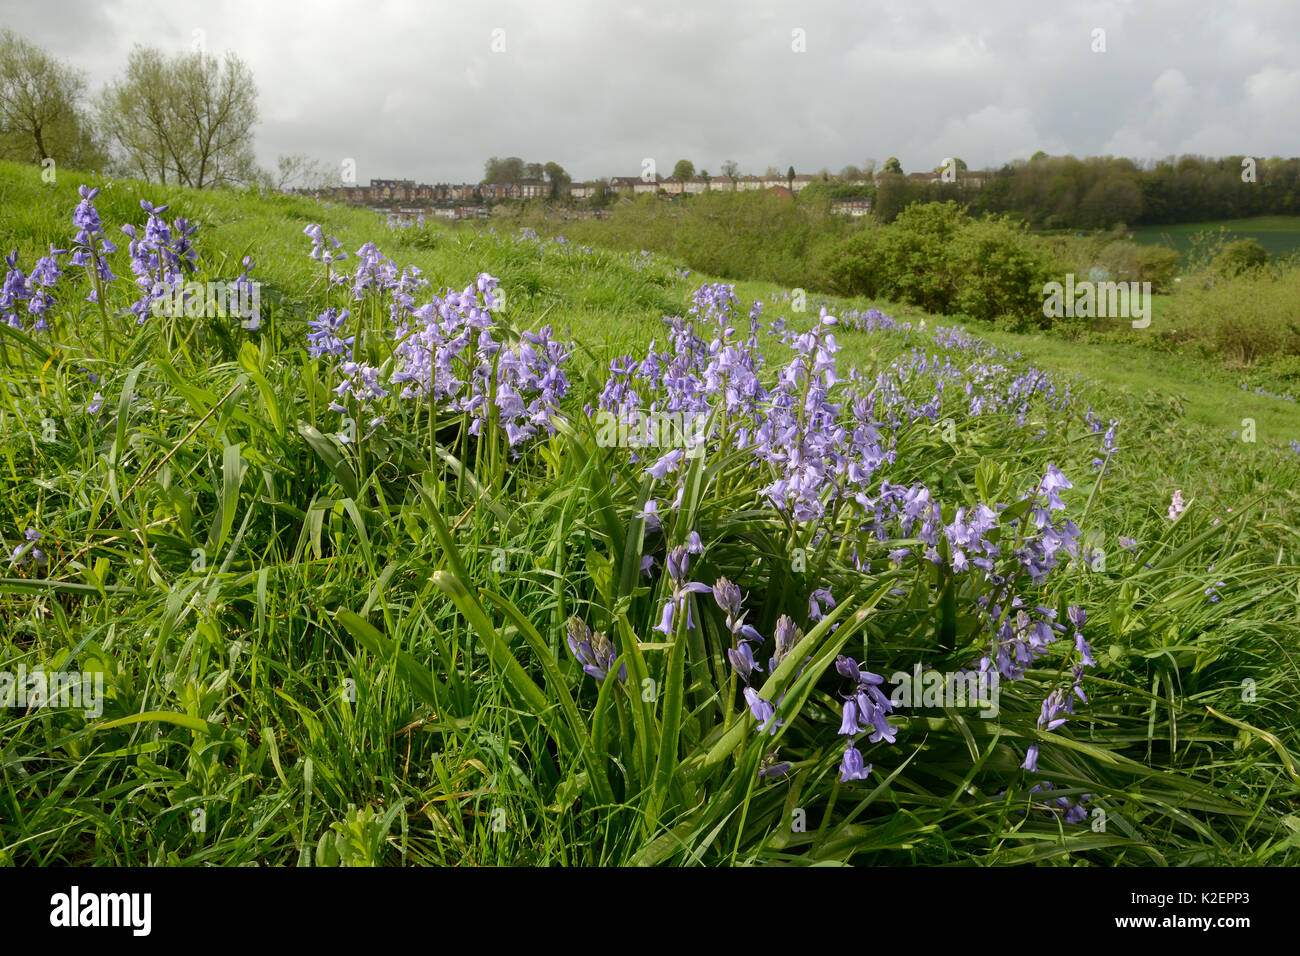 Matas de bluebell Española (Hyacinthoides hispanica), una especie invasora en el Reino Unido, la floración en tierra de residuos urbanos, Salisbury, REINO UNIDO, Abril. Foto de stock